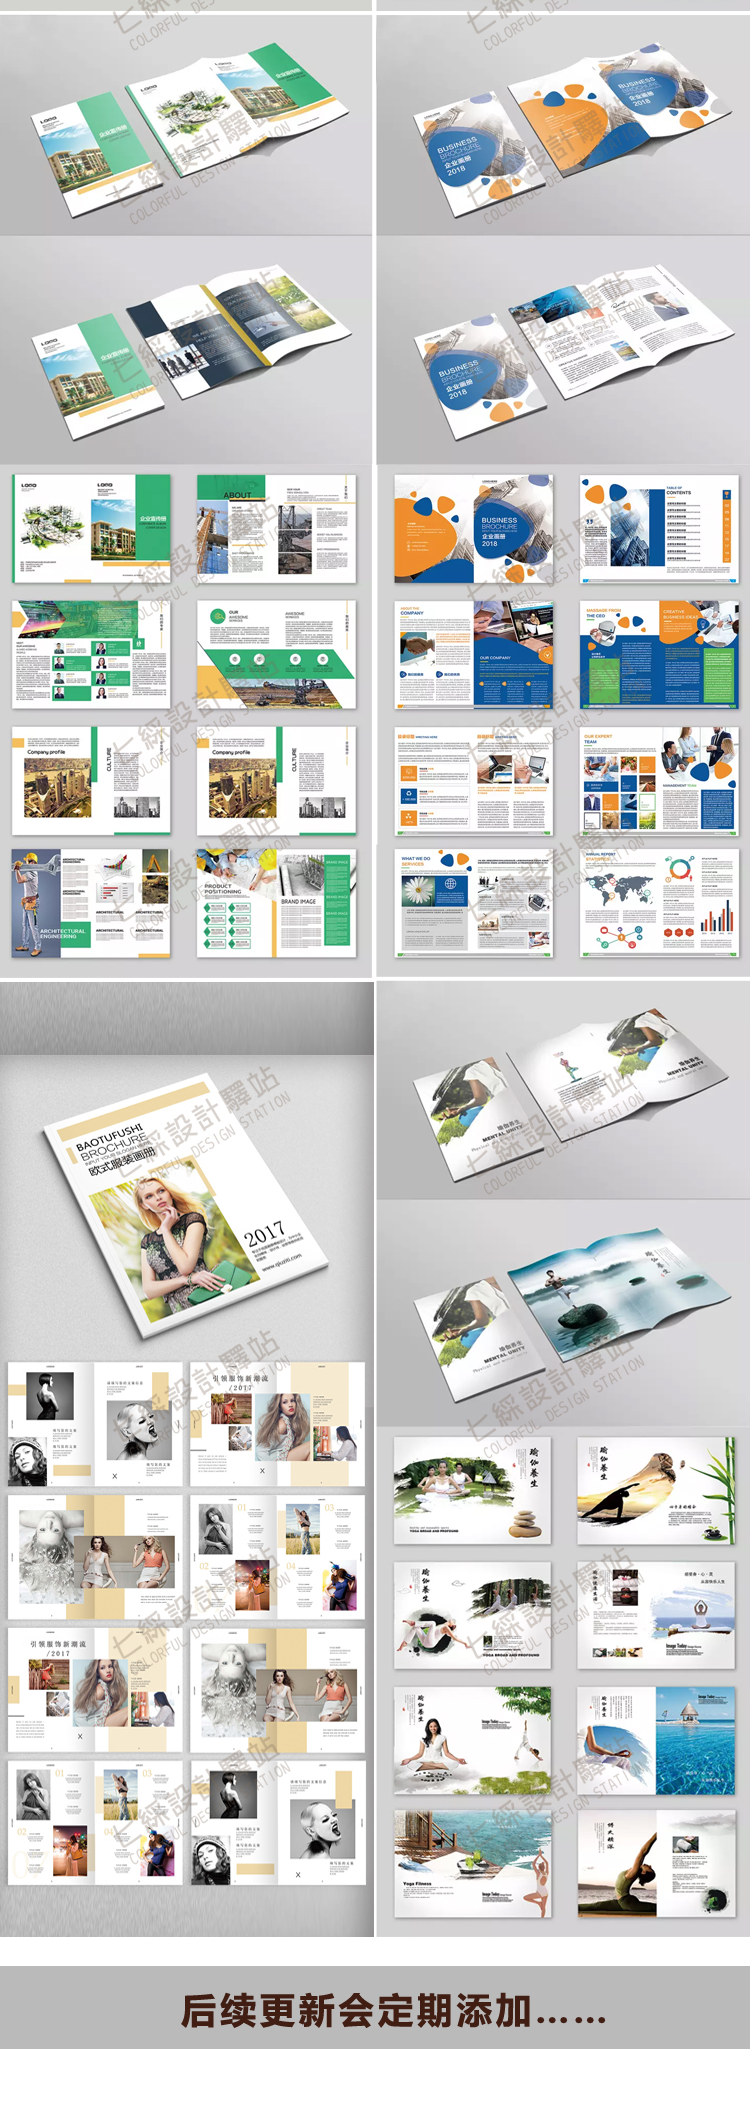  精挑企业公司画册宣传册模版杂志排版PS平面设计产品设计psd格式	